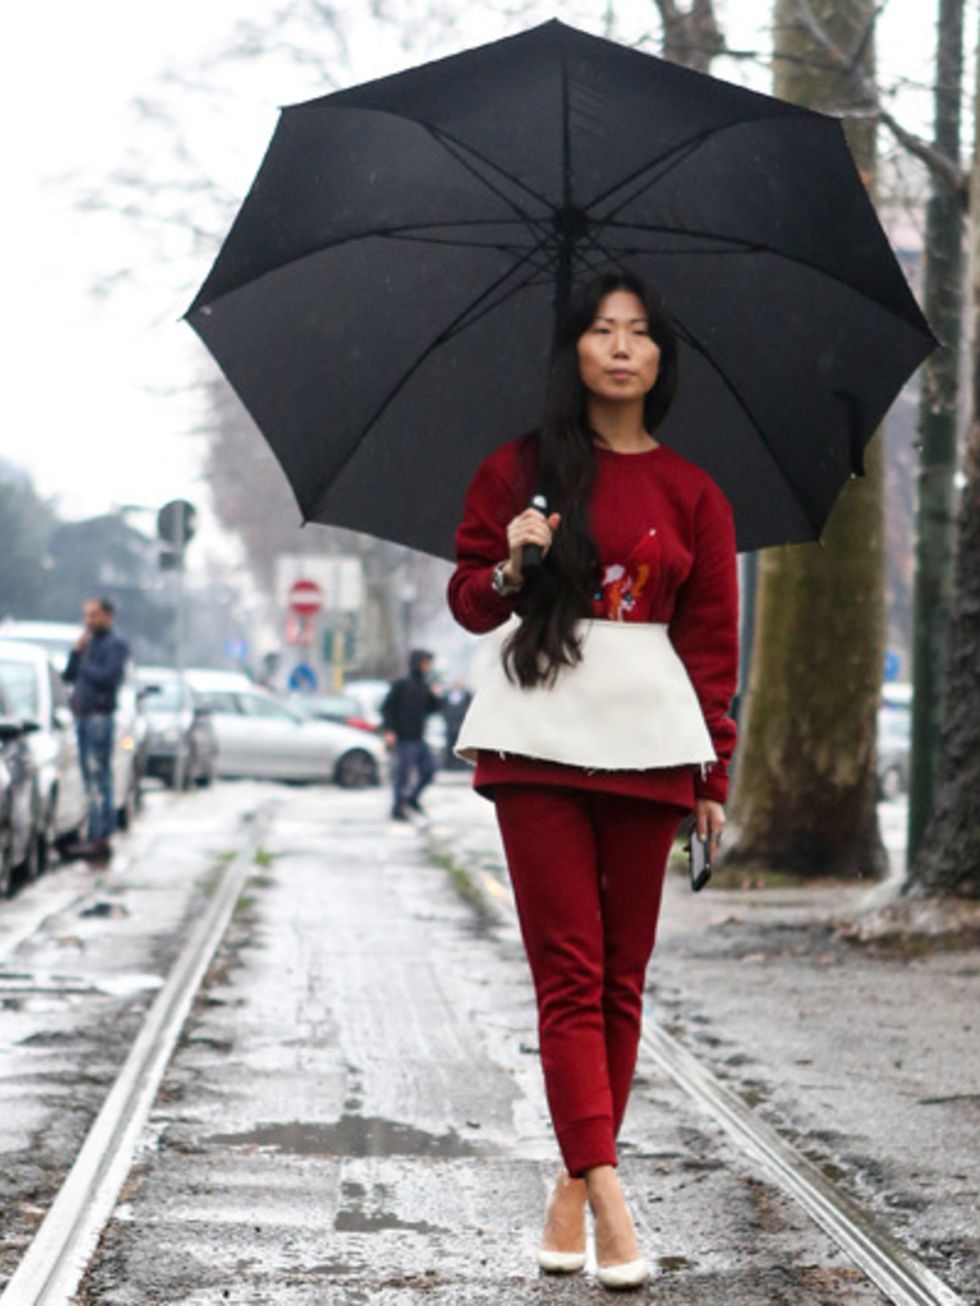 Umbrella, Sleeve, Winter, Textile, Human leg, Outerwear, Street, Street fashion, Fashion, Pedestrian, 